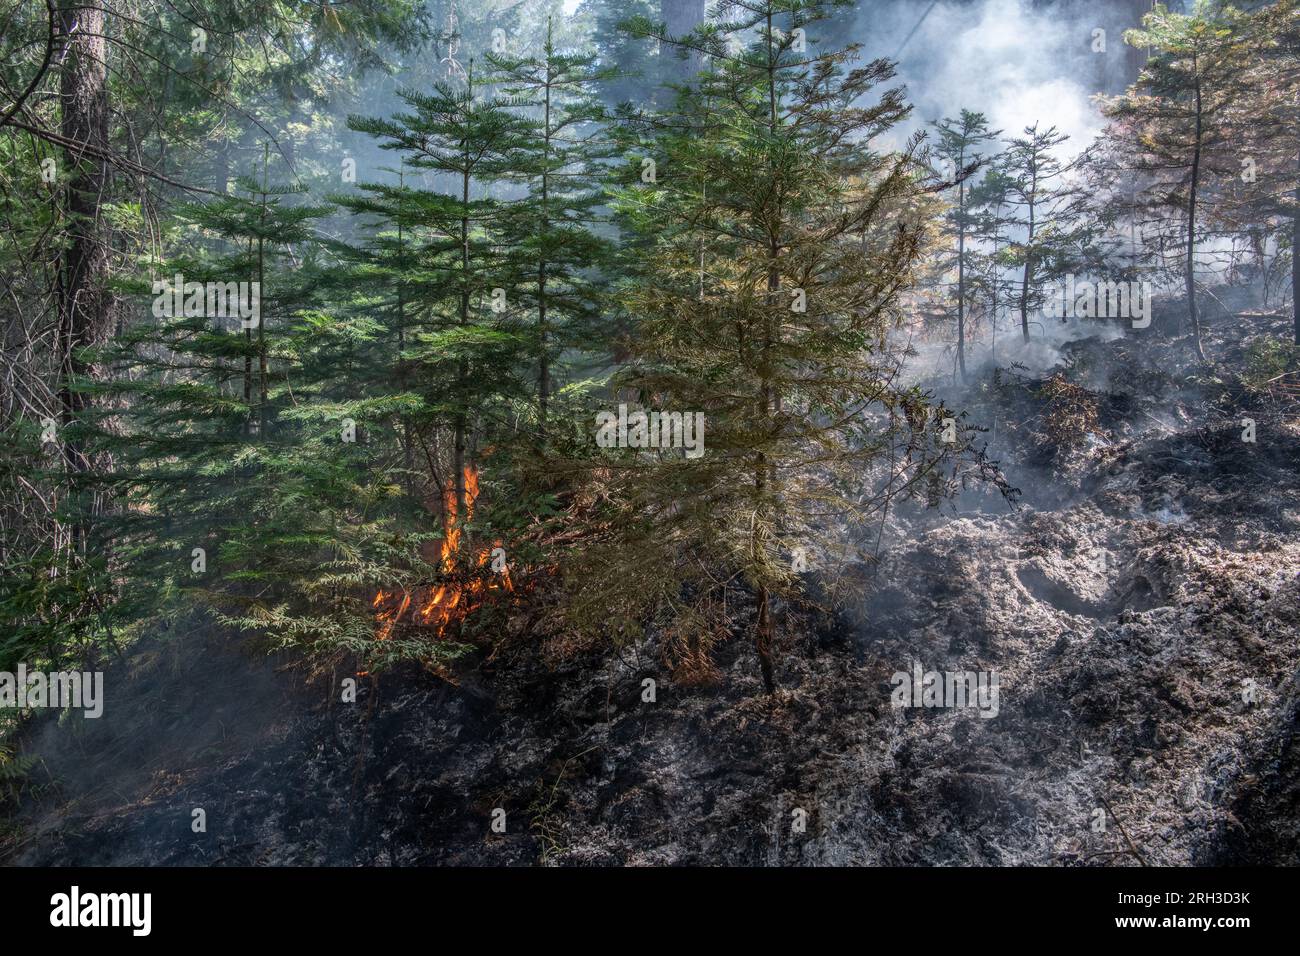 Stanislaus National Forest nella Sierra Nevada della California, un incendio che brucia sul fondo della foresta. L'ustione lascia dietro cenere carbonizzato. Foto Stock